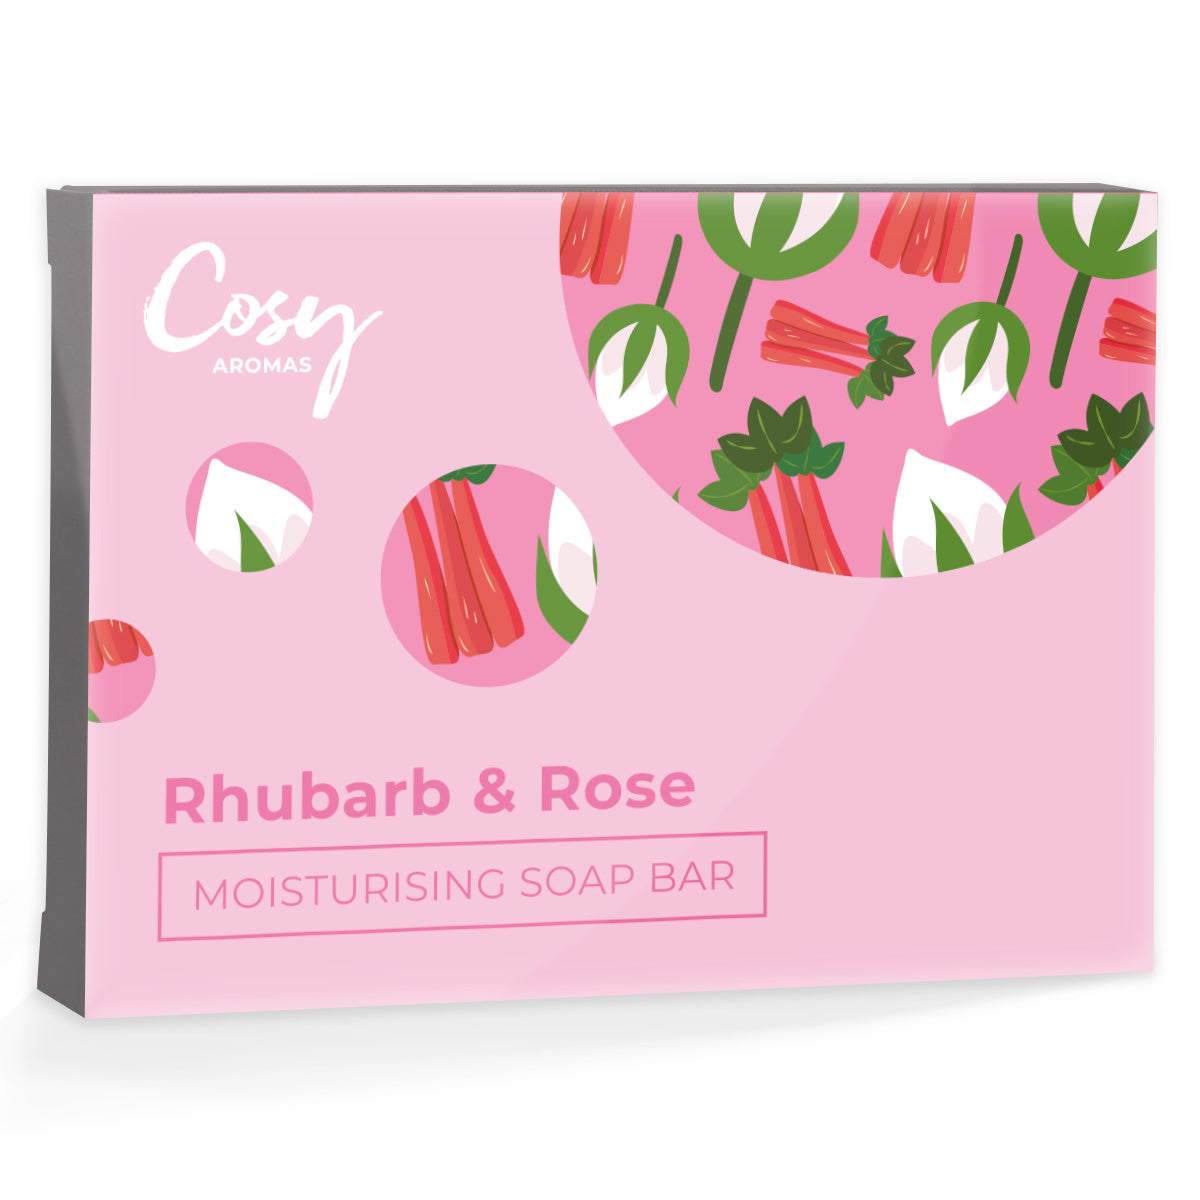 Rhubarb & Rose Moisturising Soap Bar